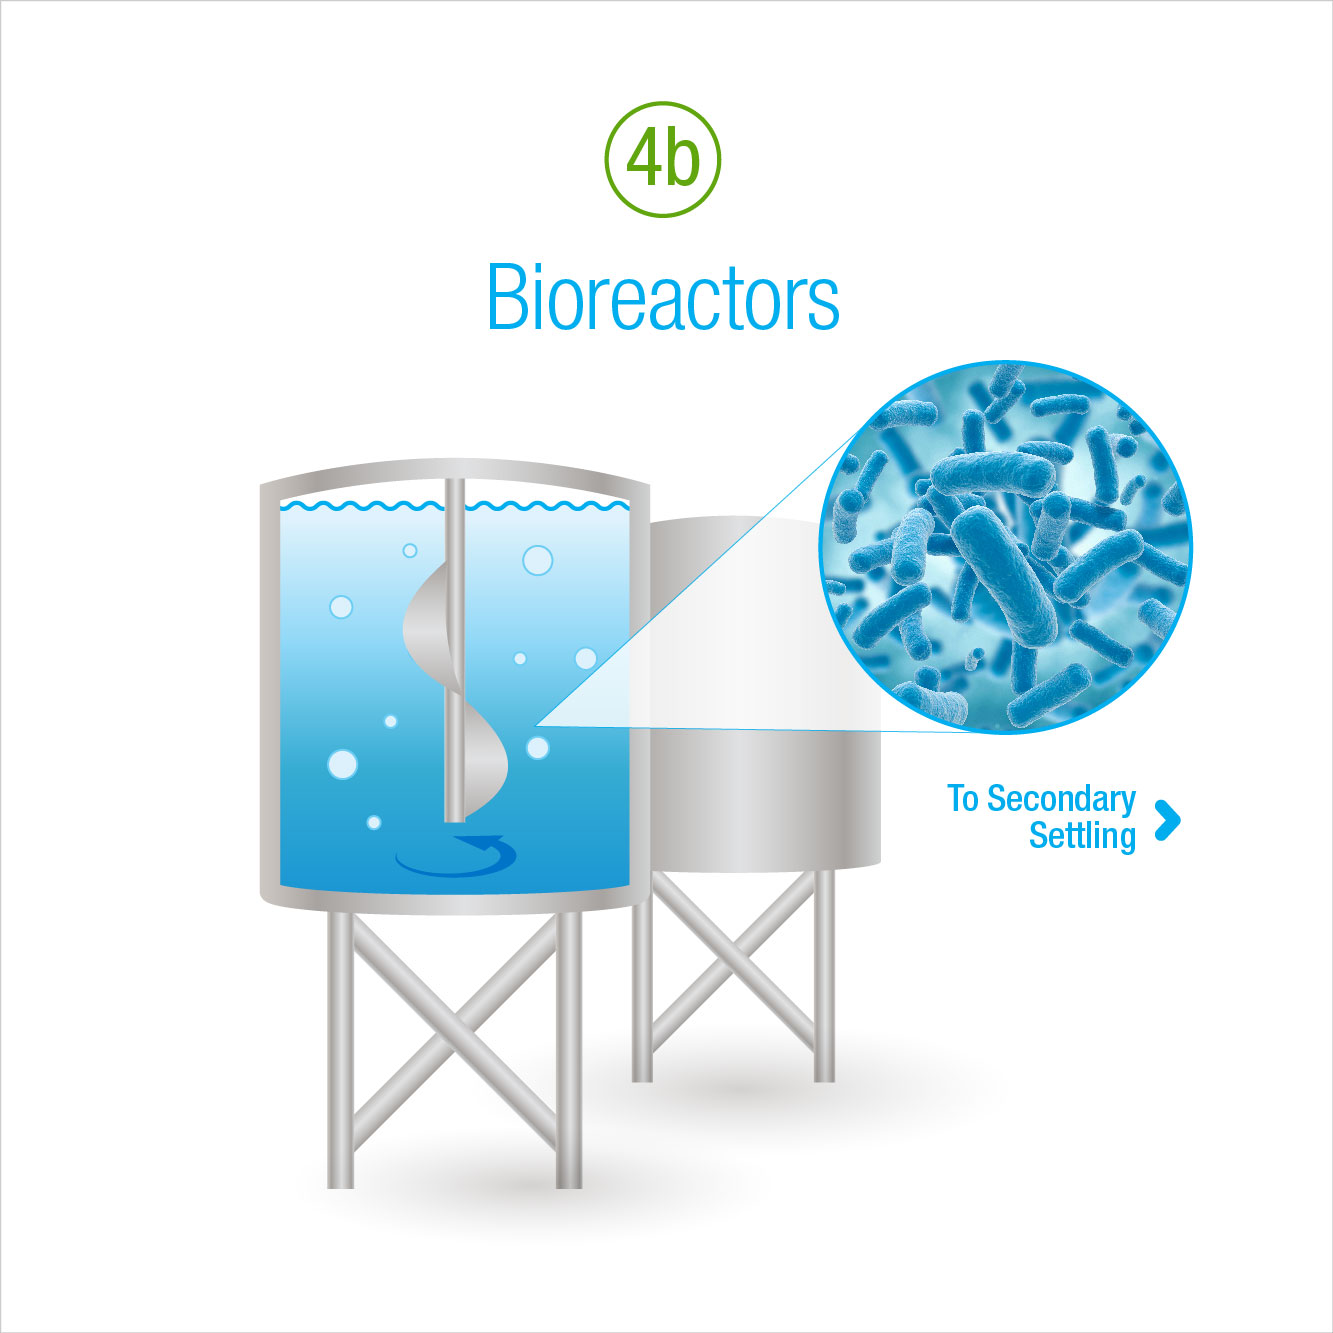 5b: Bioreactors